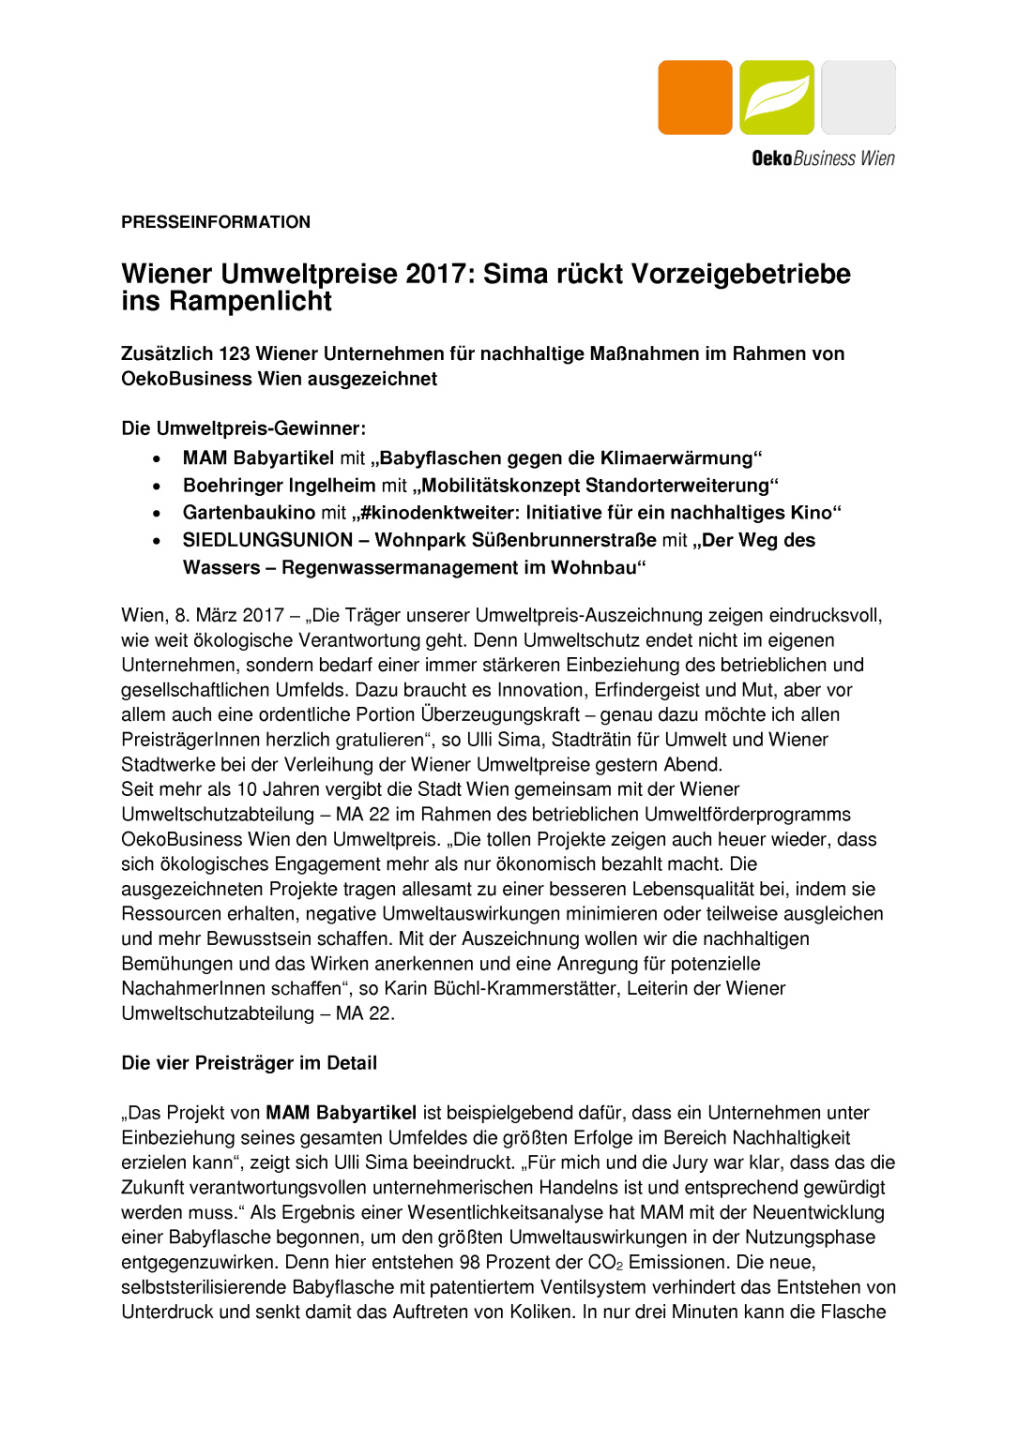 Wiener Umweltpreise 2017: Sima rückt Vorzeigebetriebe ins Rampenlicht, Seite 1/3, komplettes Dokument unter http://boerse-social.com/static/uploads/file_2150_wiener_umweltpreise_2017_sima_ruckt_vorzeigebetriebe_ins_rampenlicht.pdf